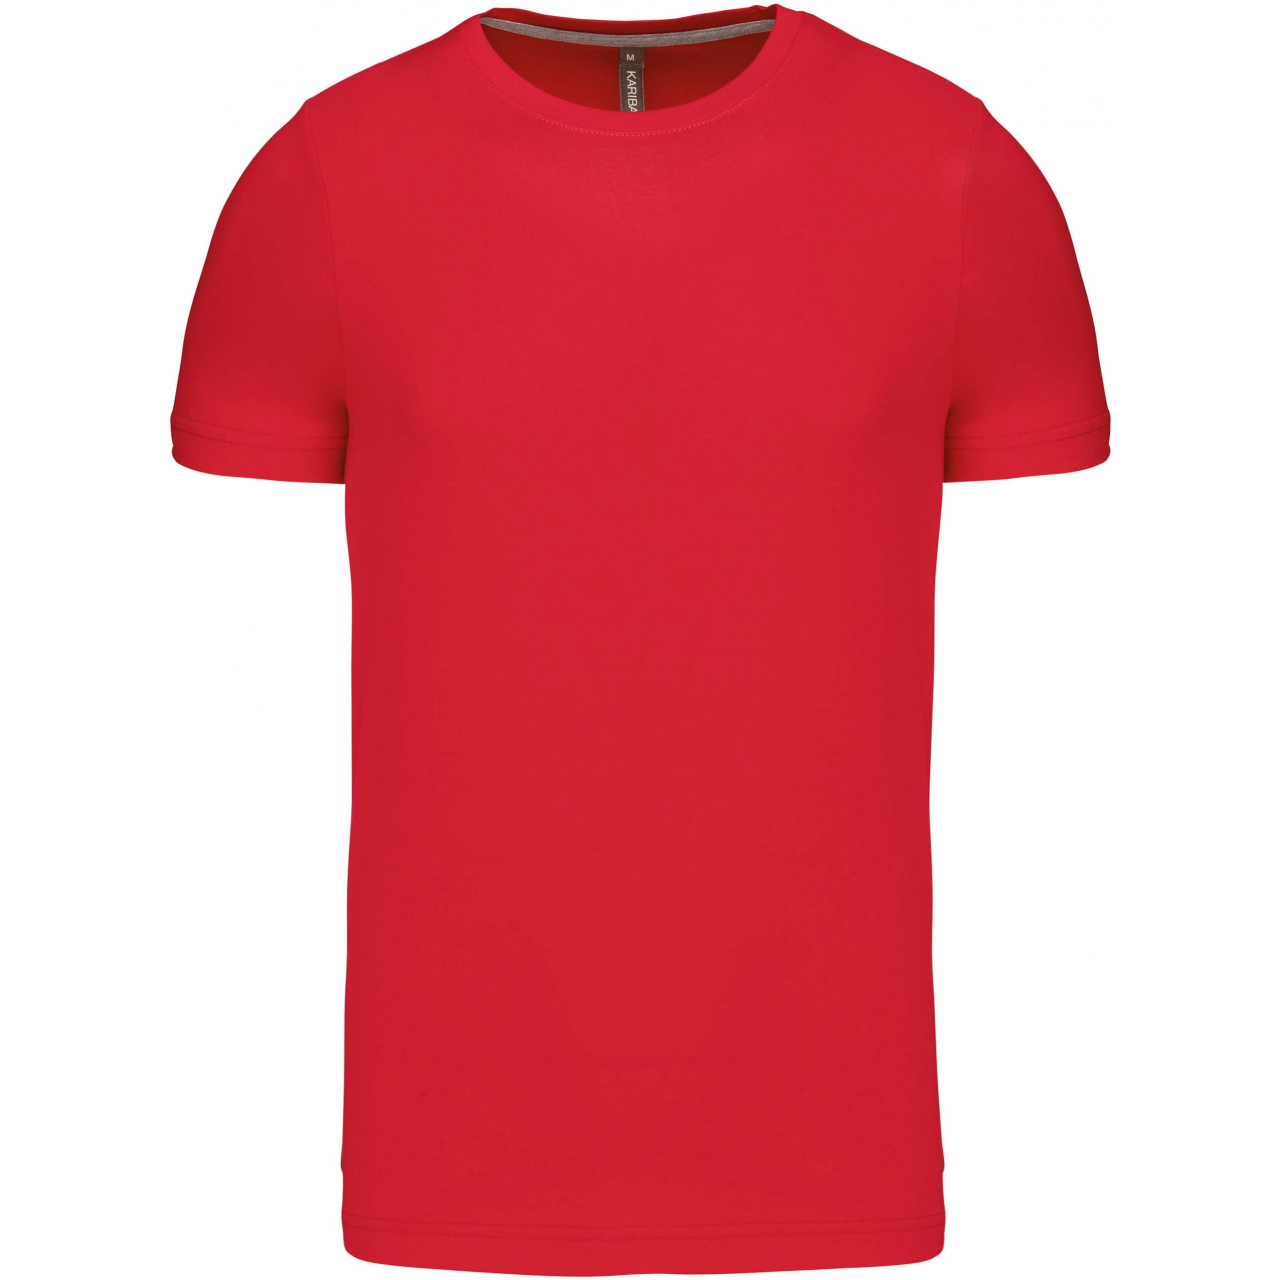 Pánské tričko Kariban krátký rukáv - červené, M